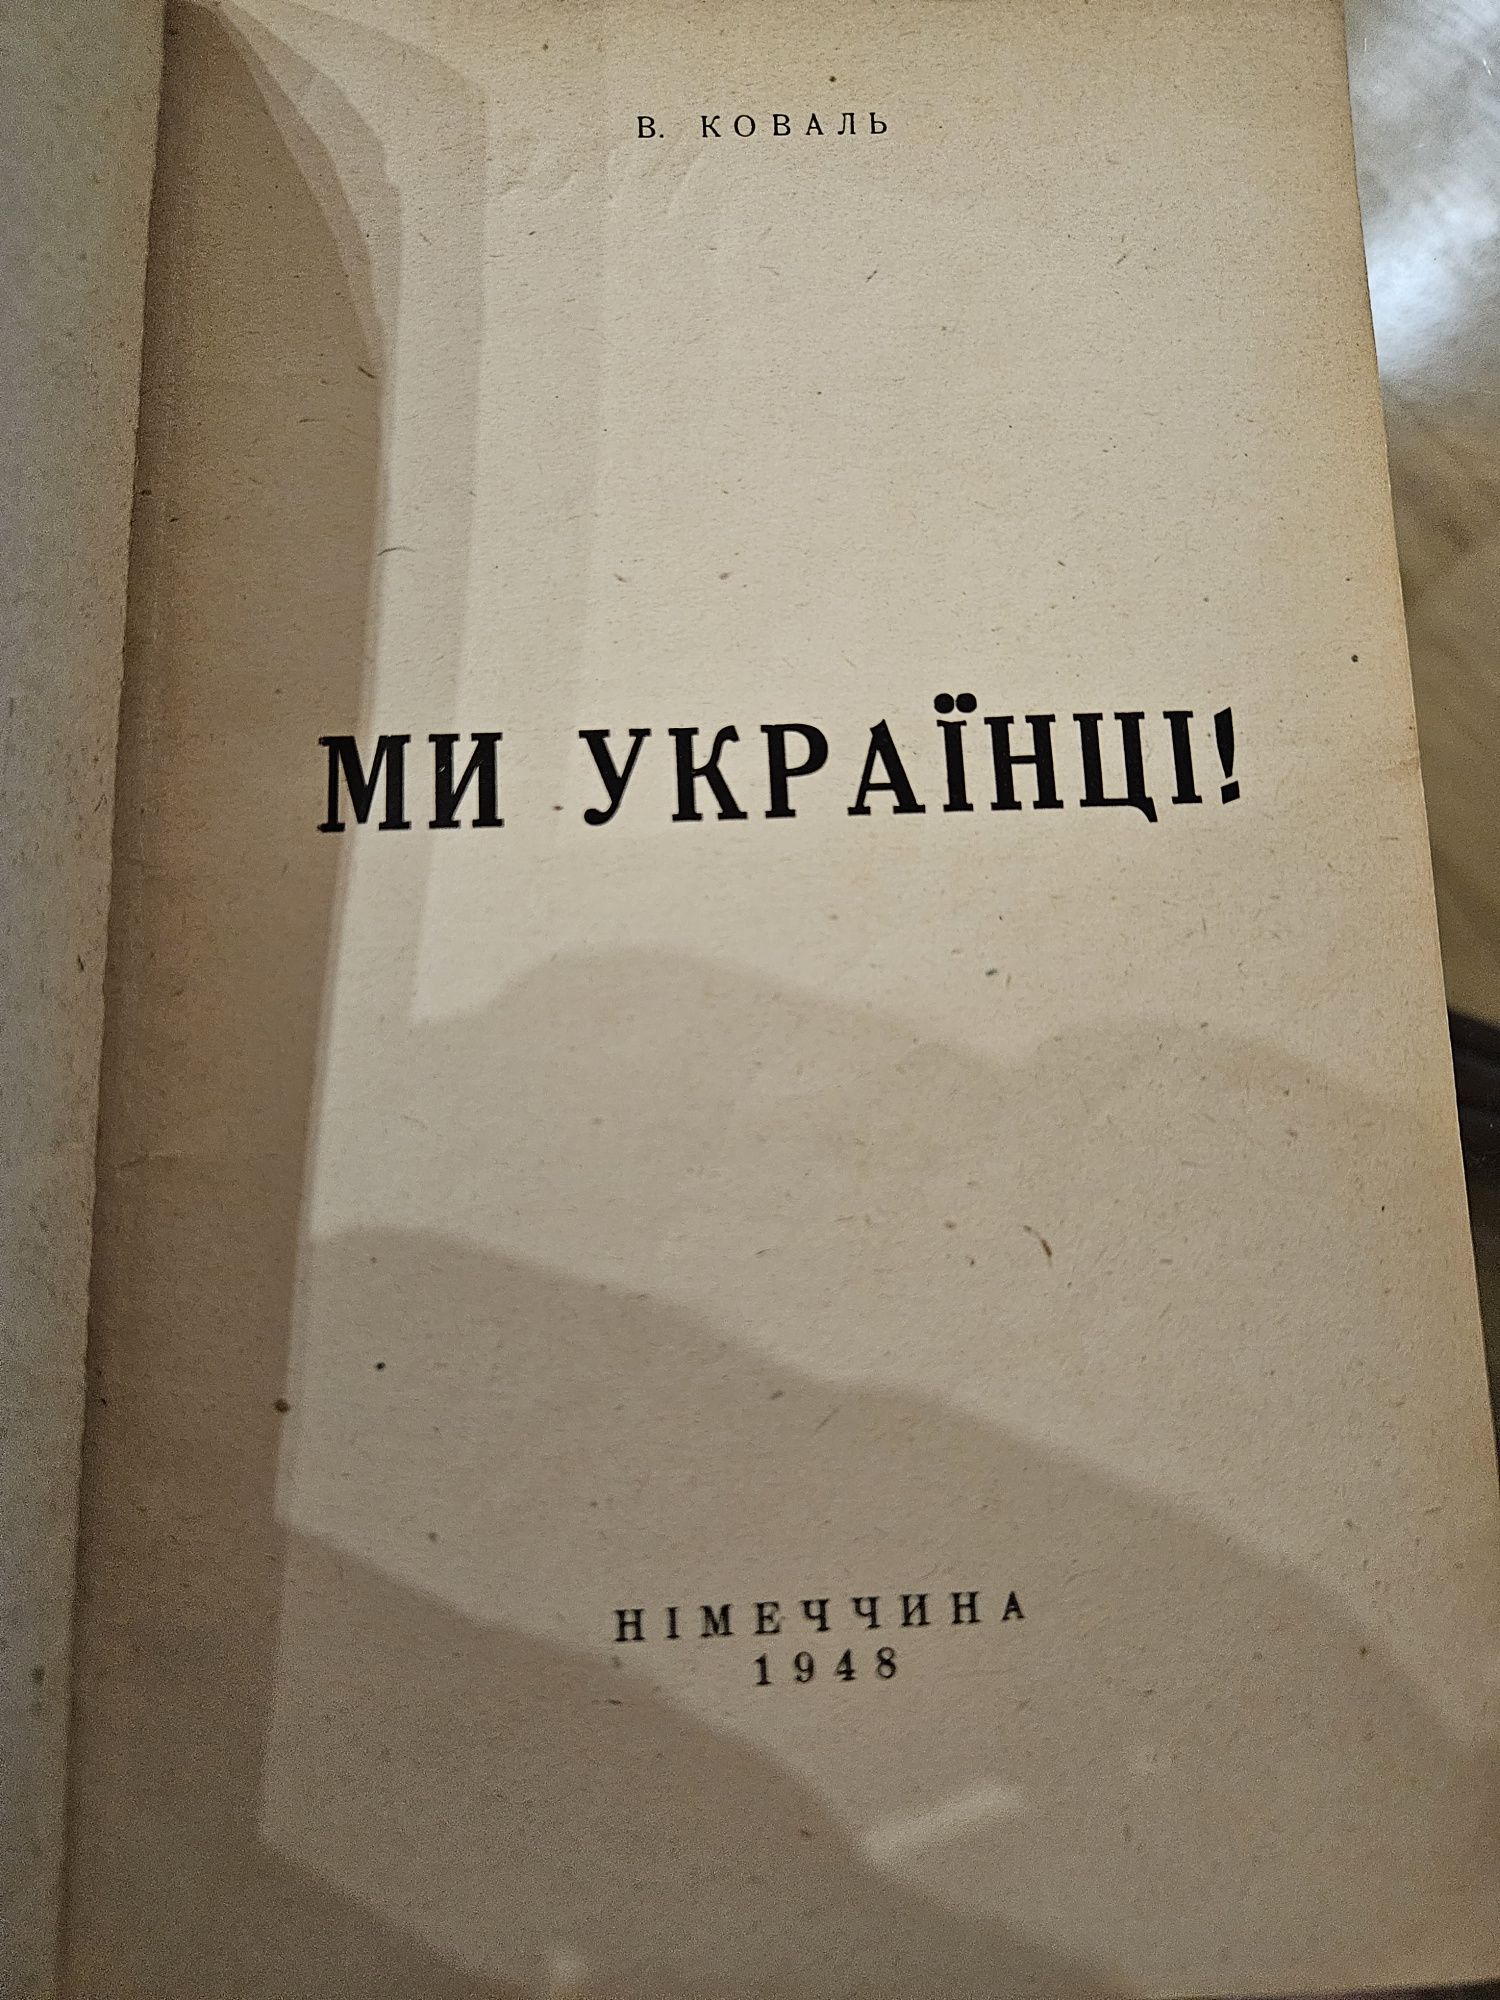 " Ми українці" Омеляна Коваля, 1948р.